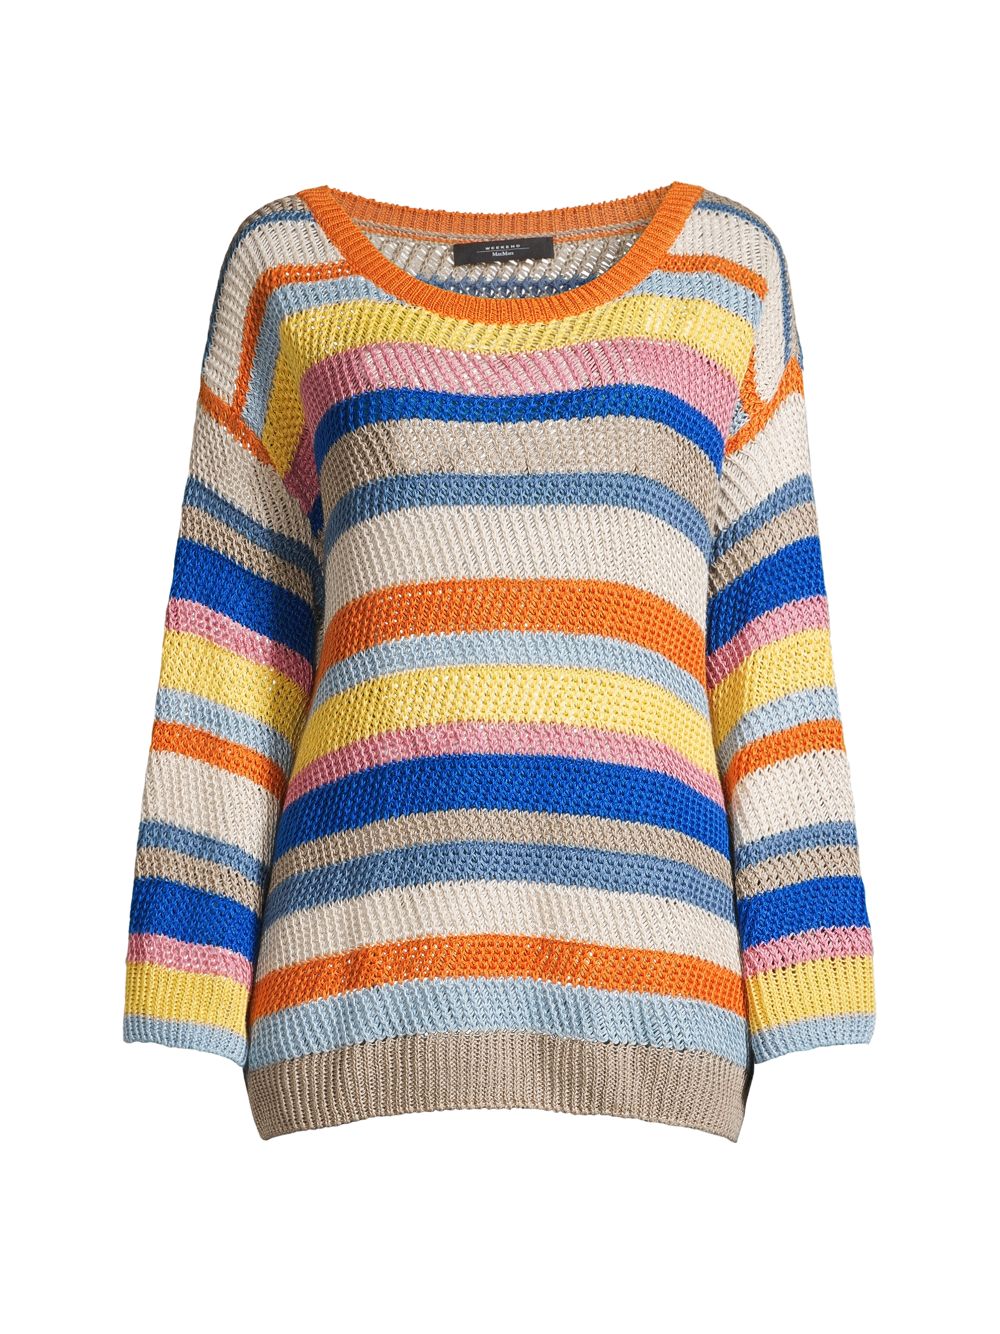 Полосатый льняной свитер Uguale Weekend Max Mara, разноцветный полосатый льняной коврик coincasa белый